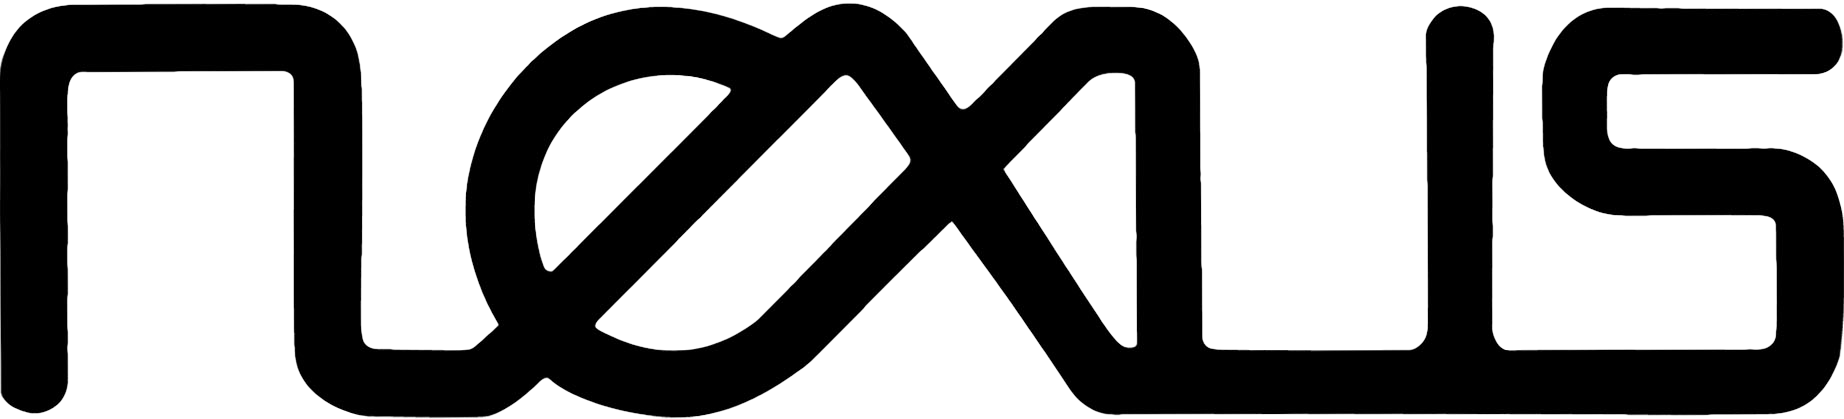 NEXUS logo